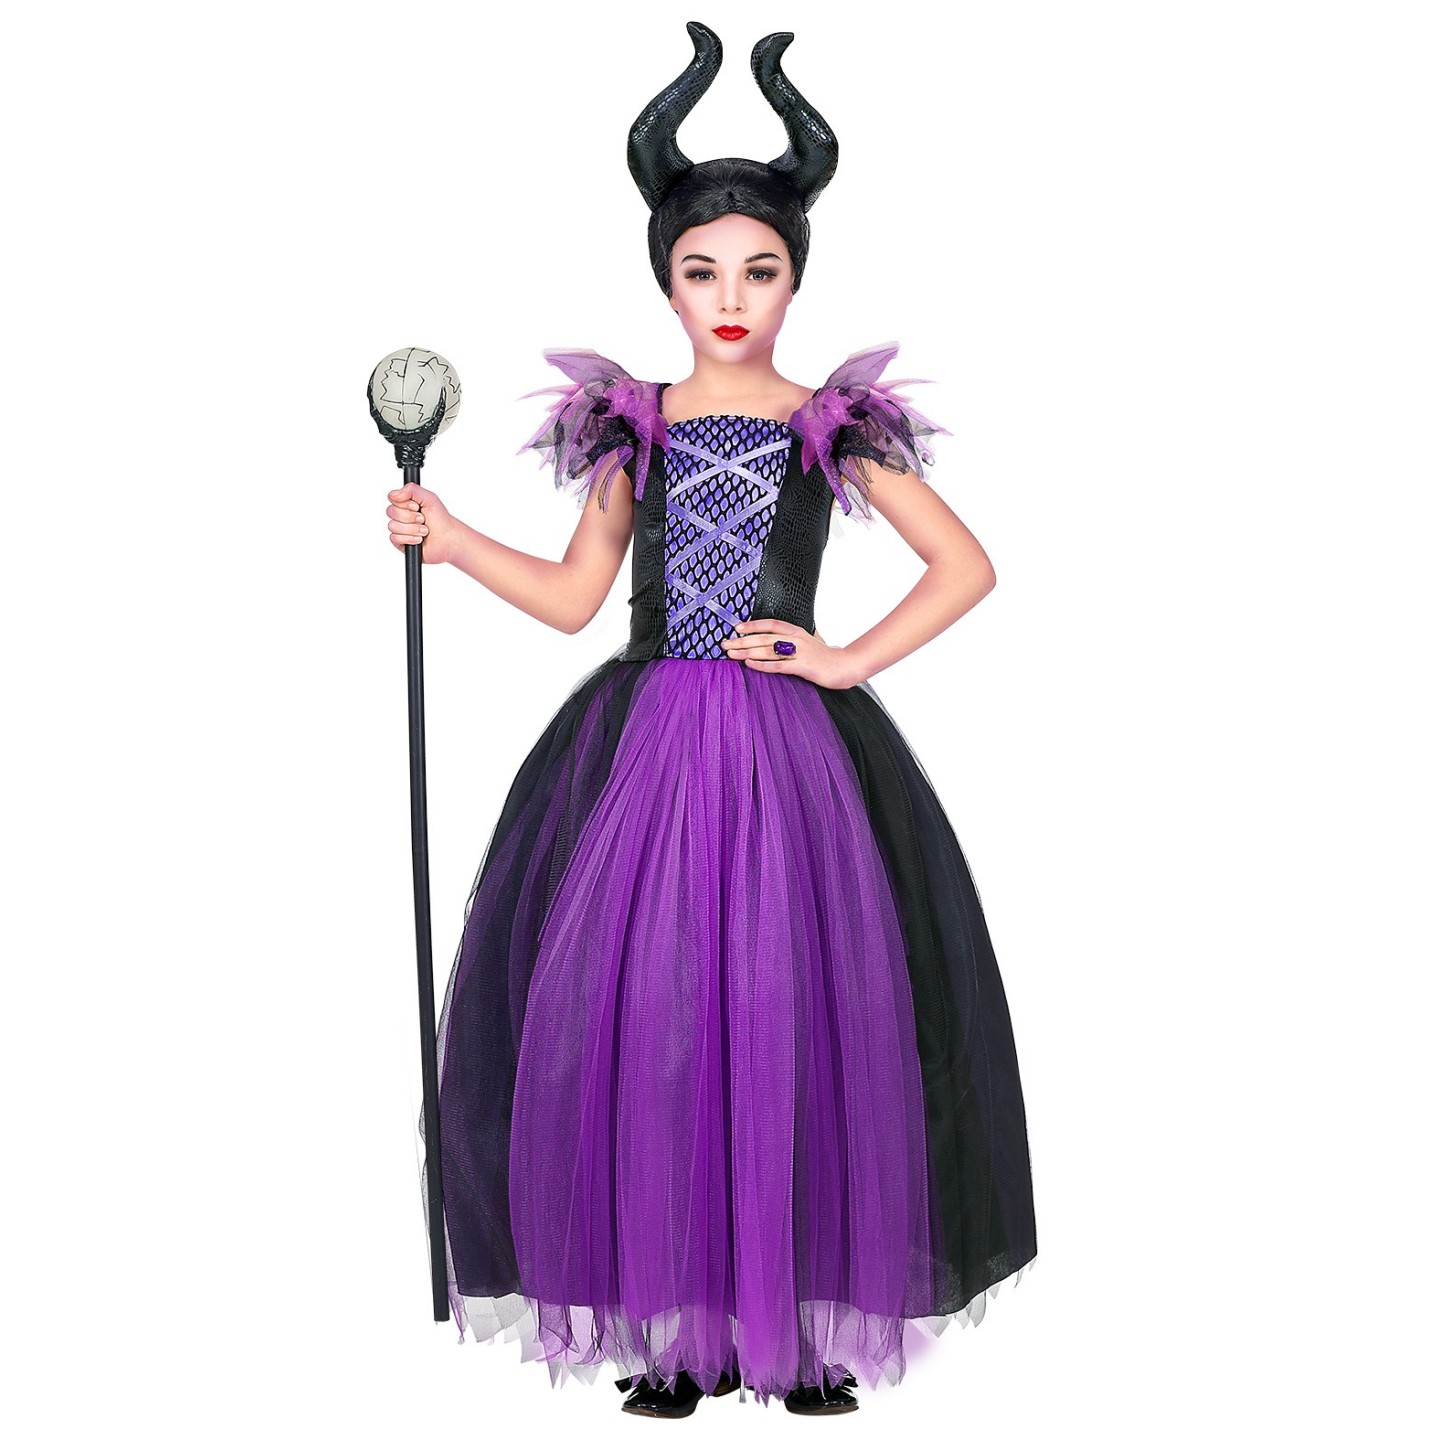 Verwonderlijk Maleficent kostuum kind | Jokershop.be - Halloween kleding TU-43